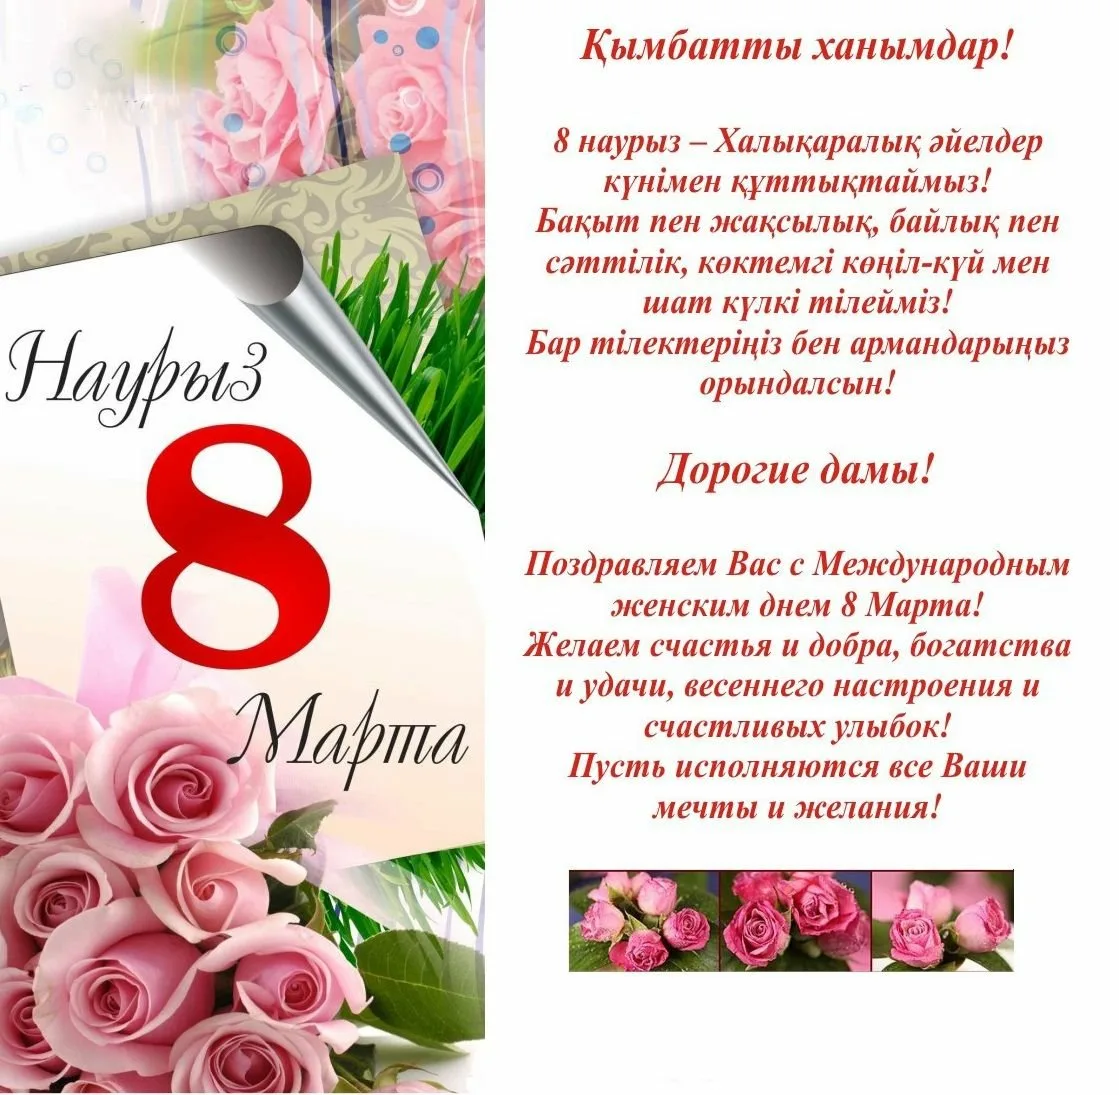 Фото Поздравления с 8 Марта на казахском языке с переводом на русский #52